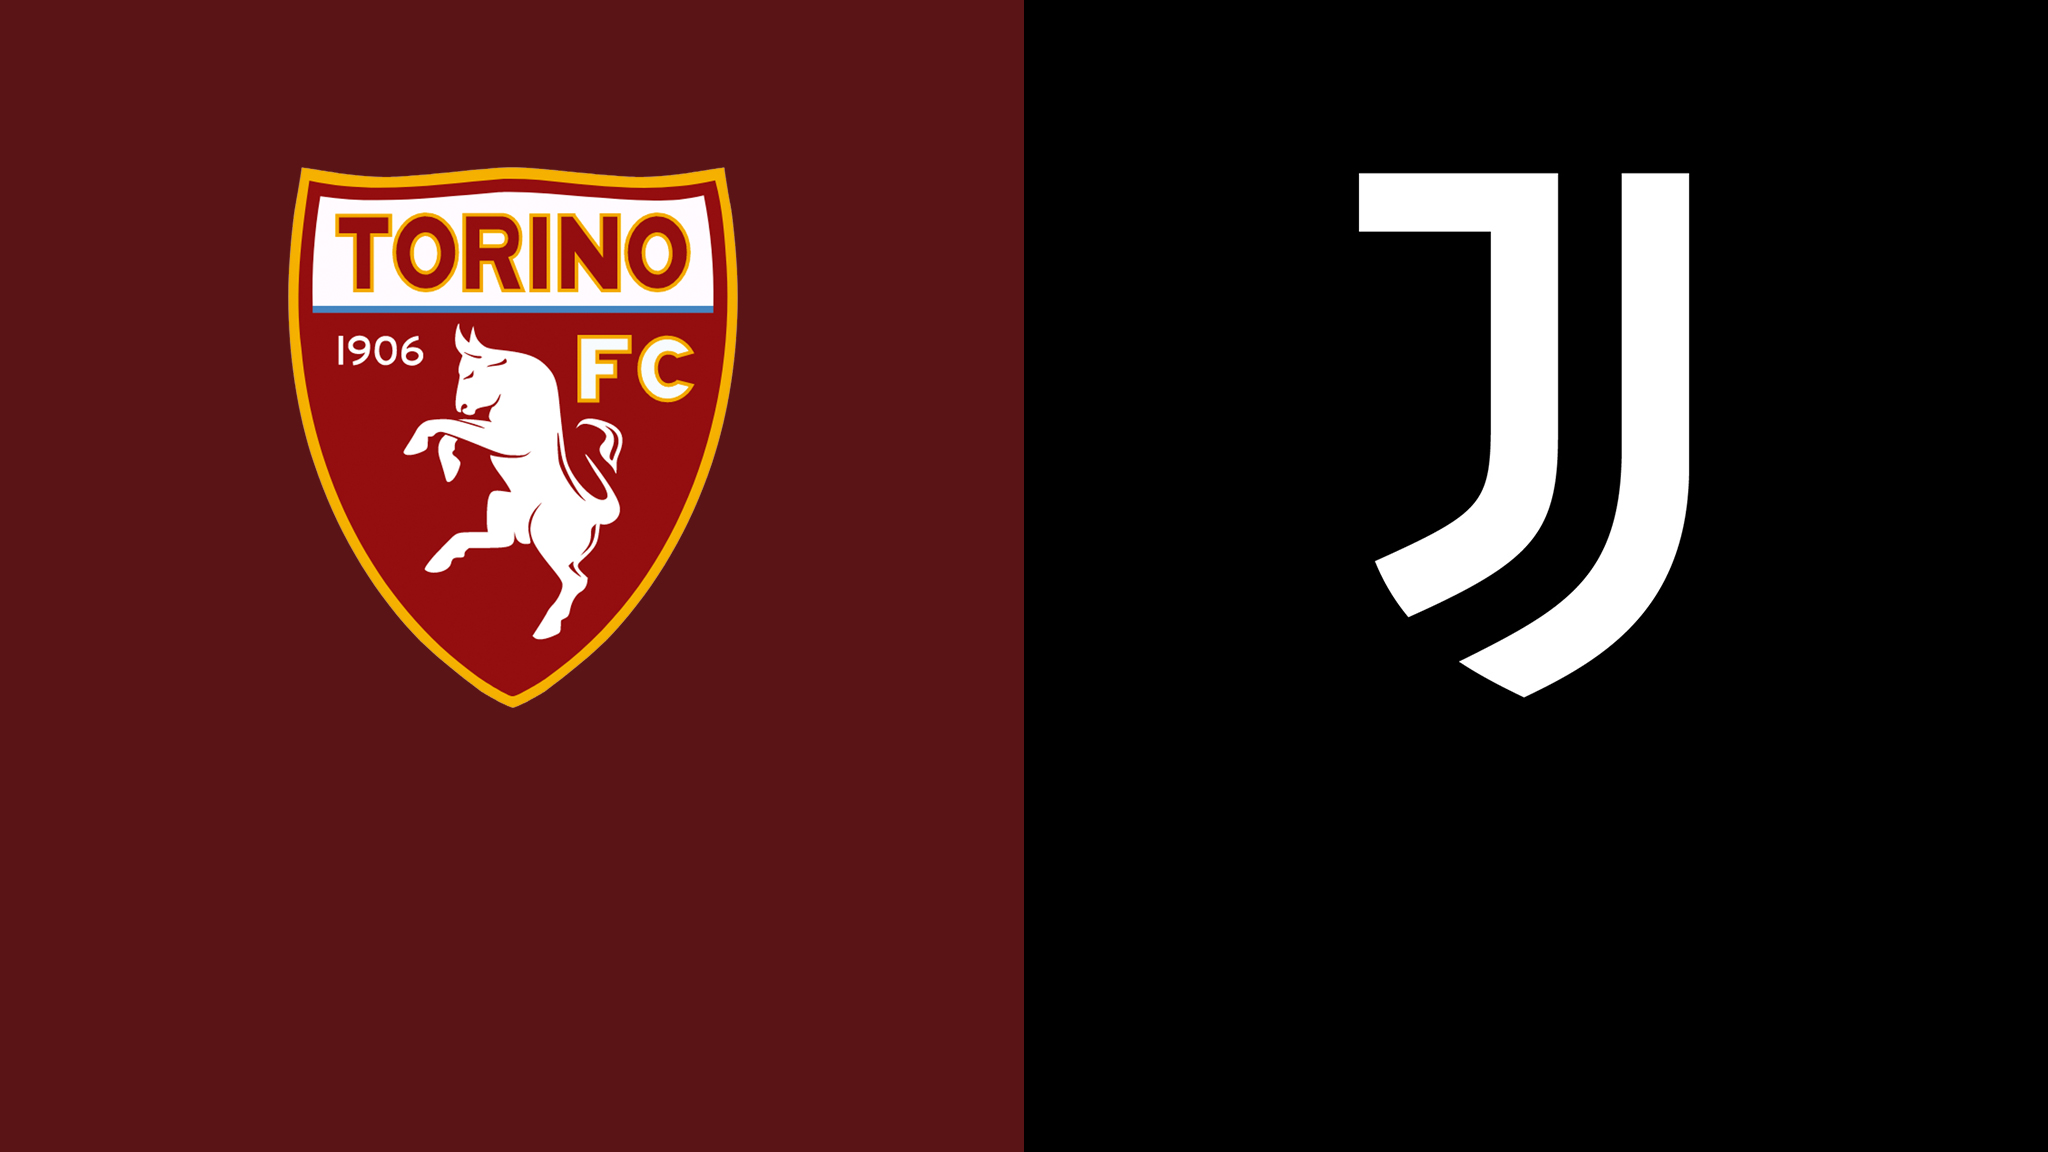  مشاهدة مباراة يوفنتوس و تورينو بث مباشر 15/10/2022 Torino vs Juventus